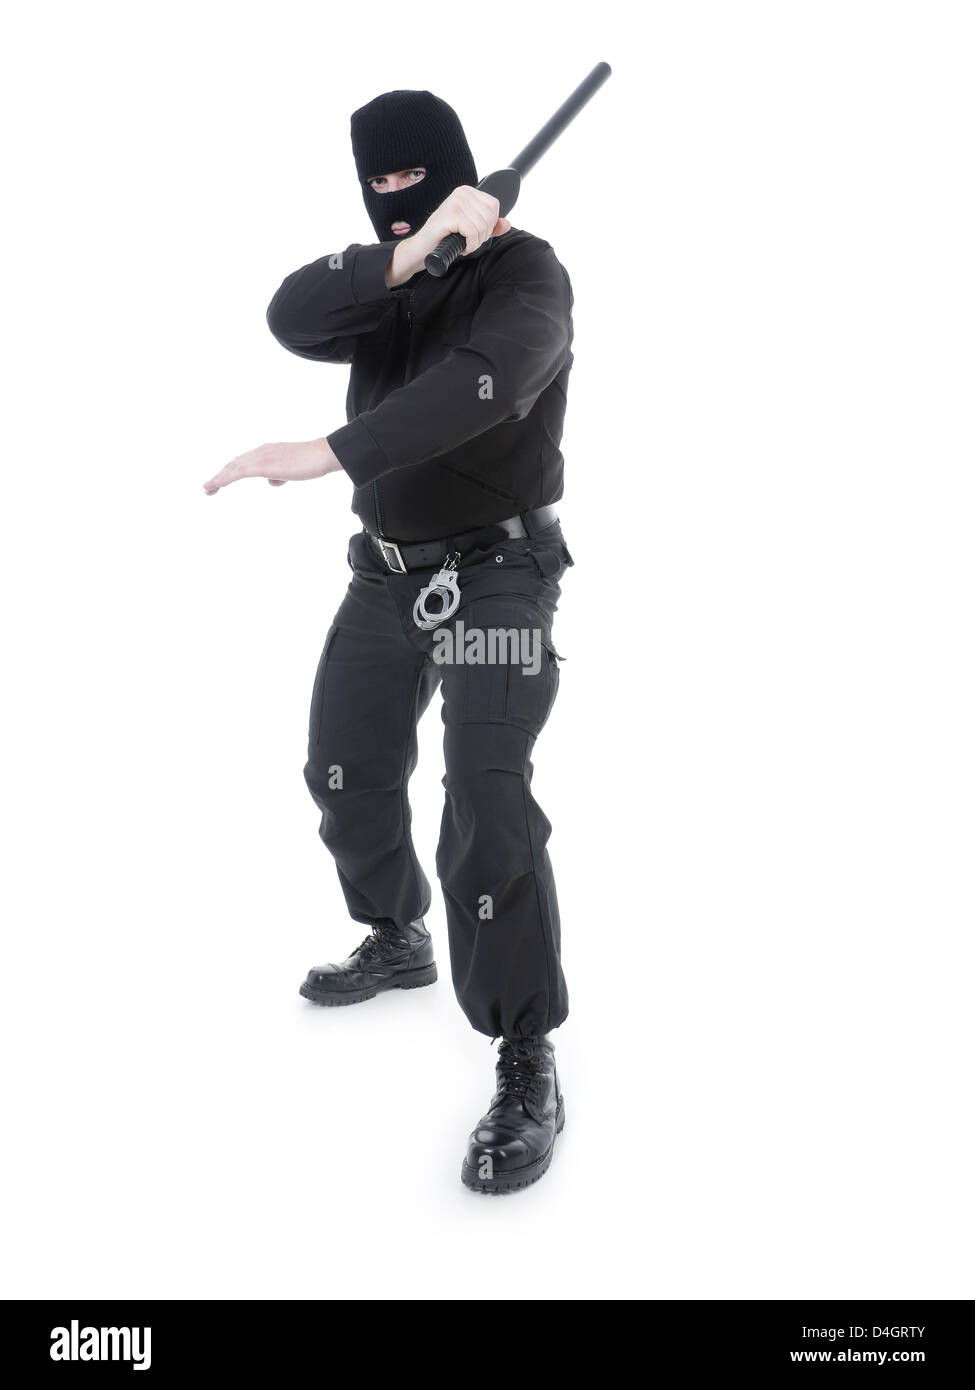 La policía antiterrorista guy vistiendo uniforme negro y máscara negra sujetando firmemente el club policial en una mano levantada en el aire Foto de stock